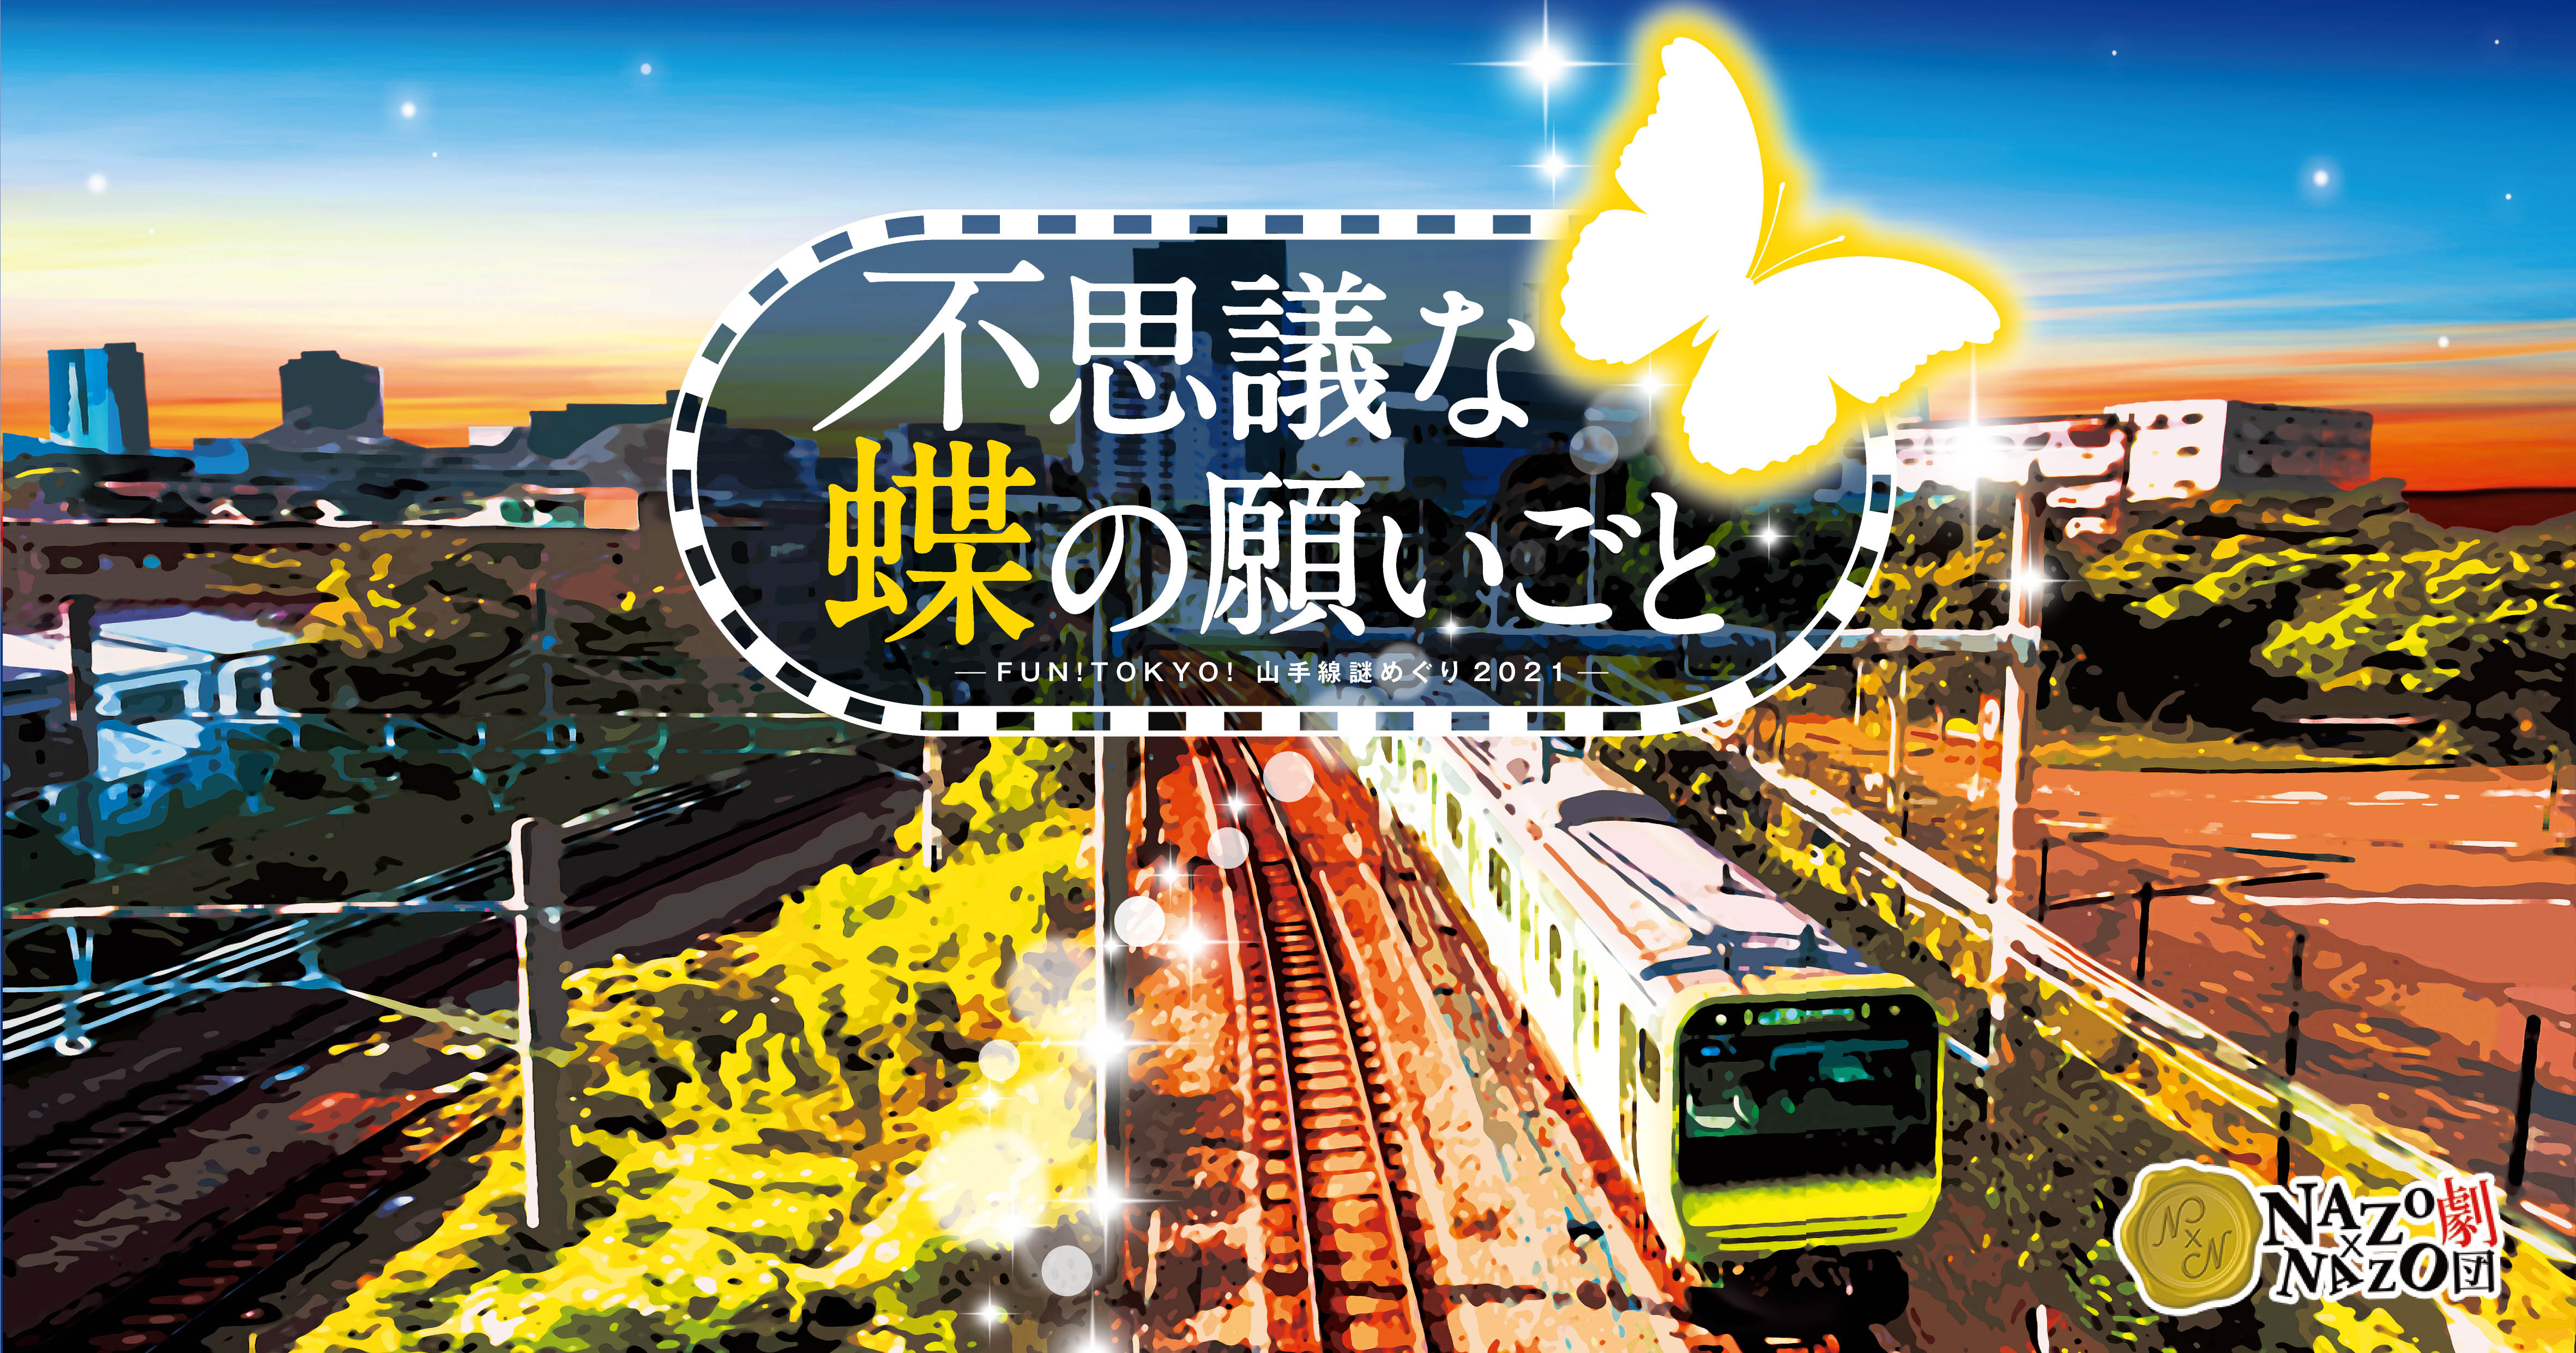 FUN!TOKYO!山手線謎めぐり2021「不思議な蝶の願いごと」